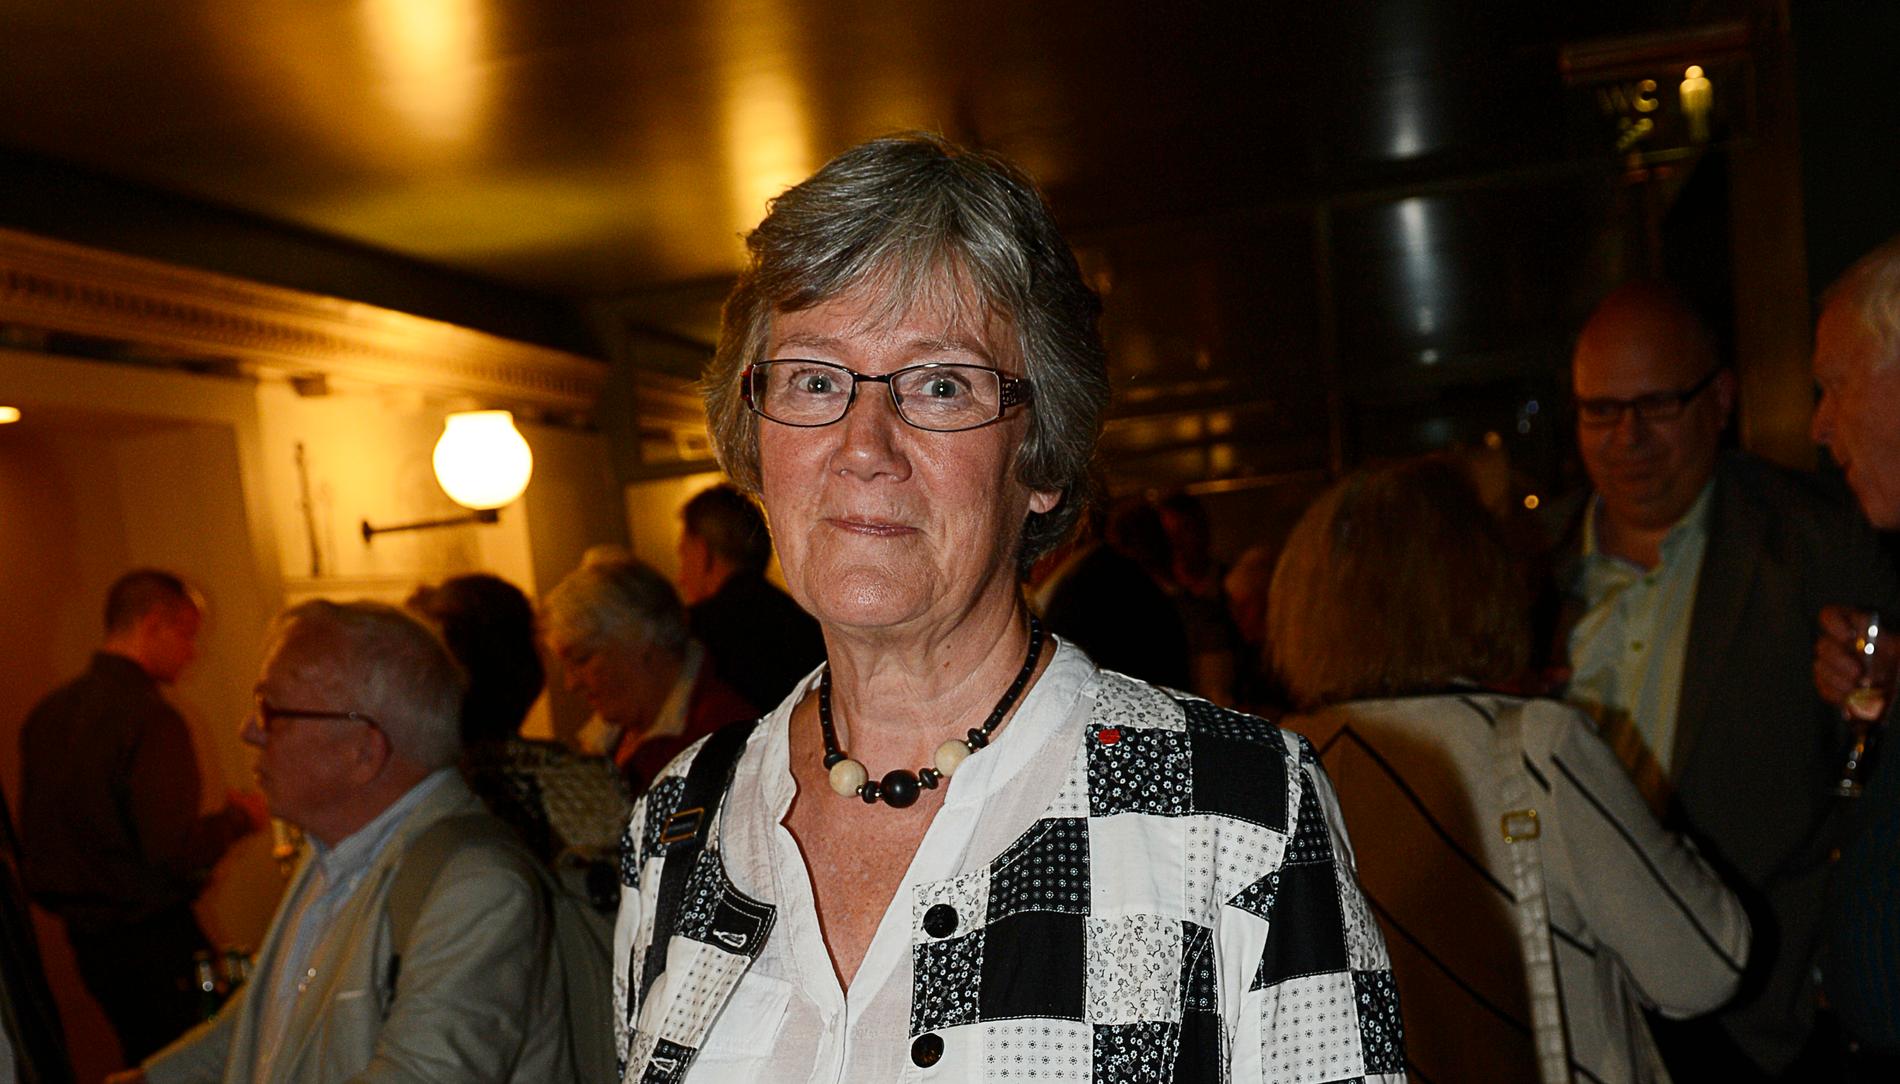 Lena Hjelm-Wallén